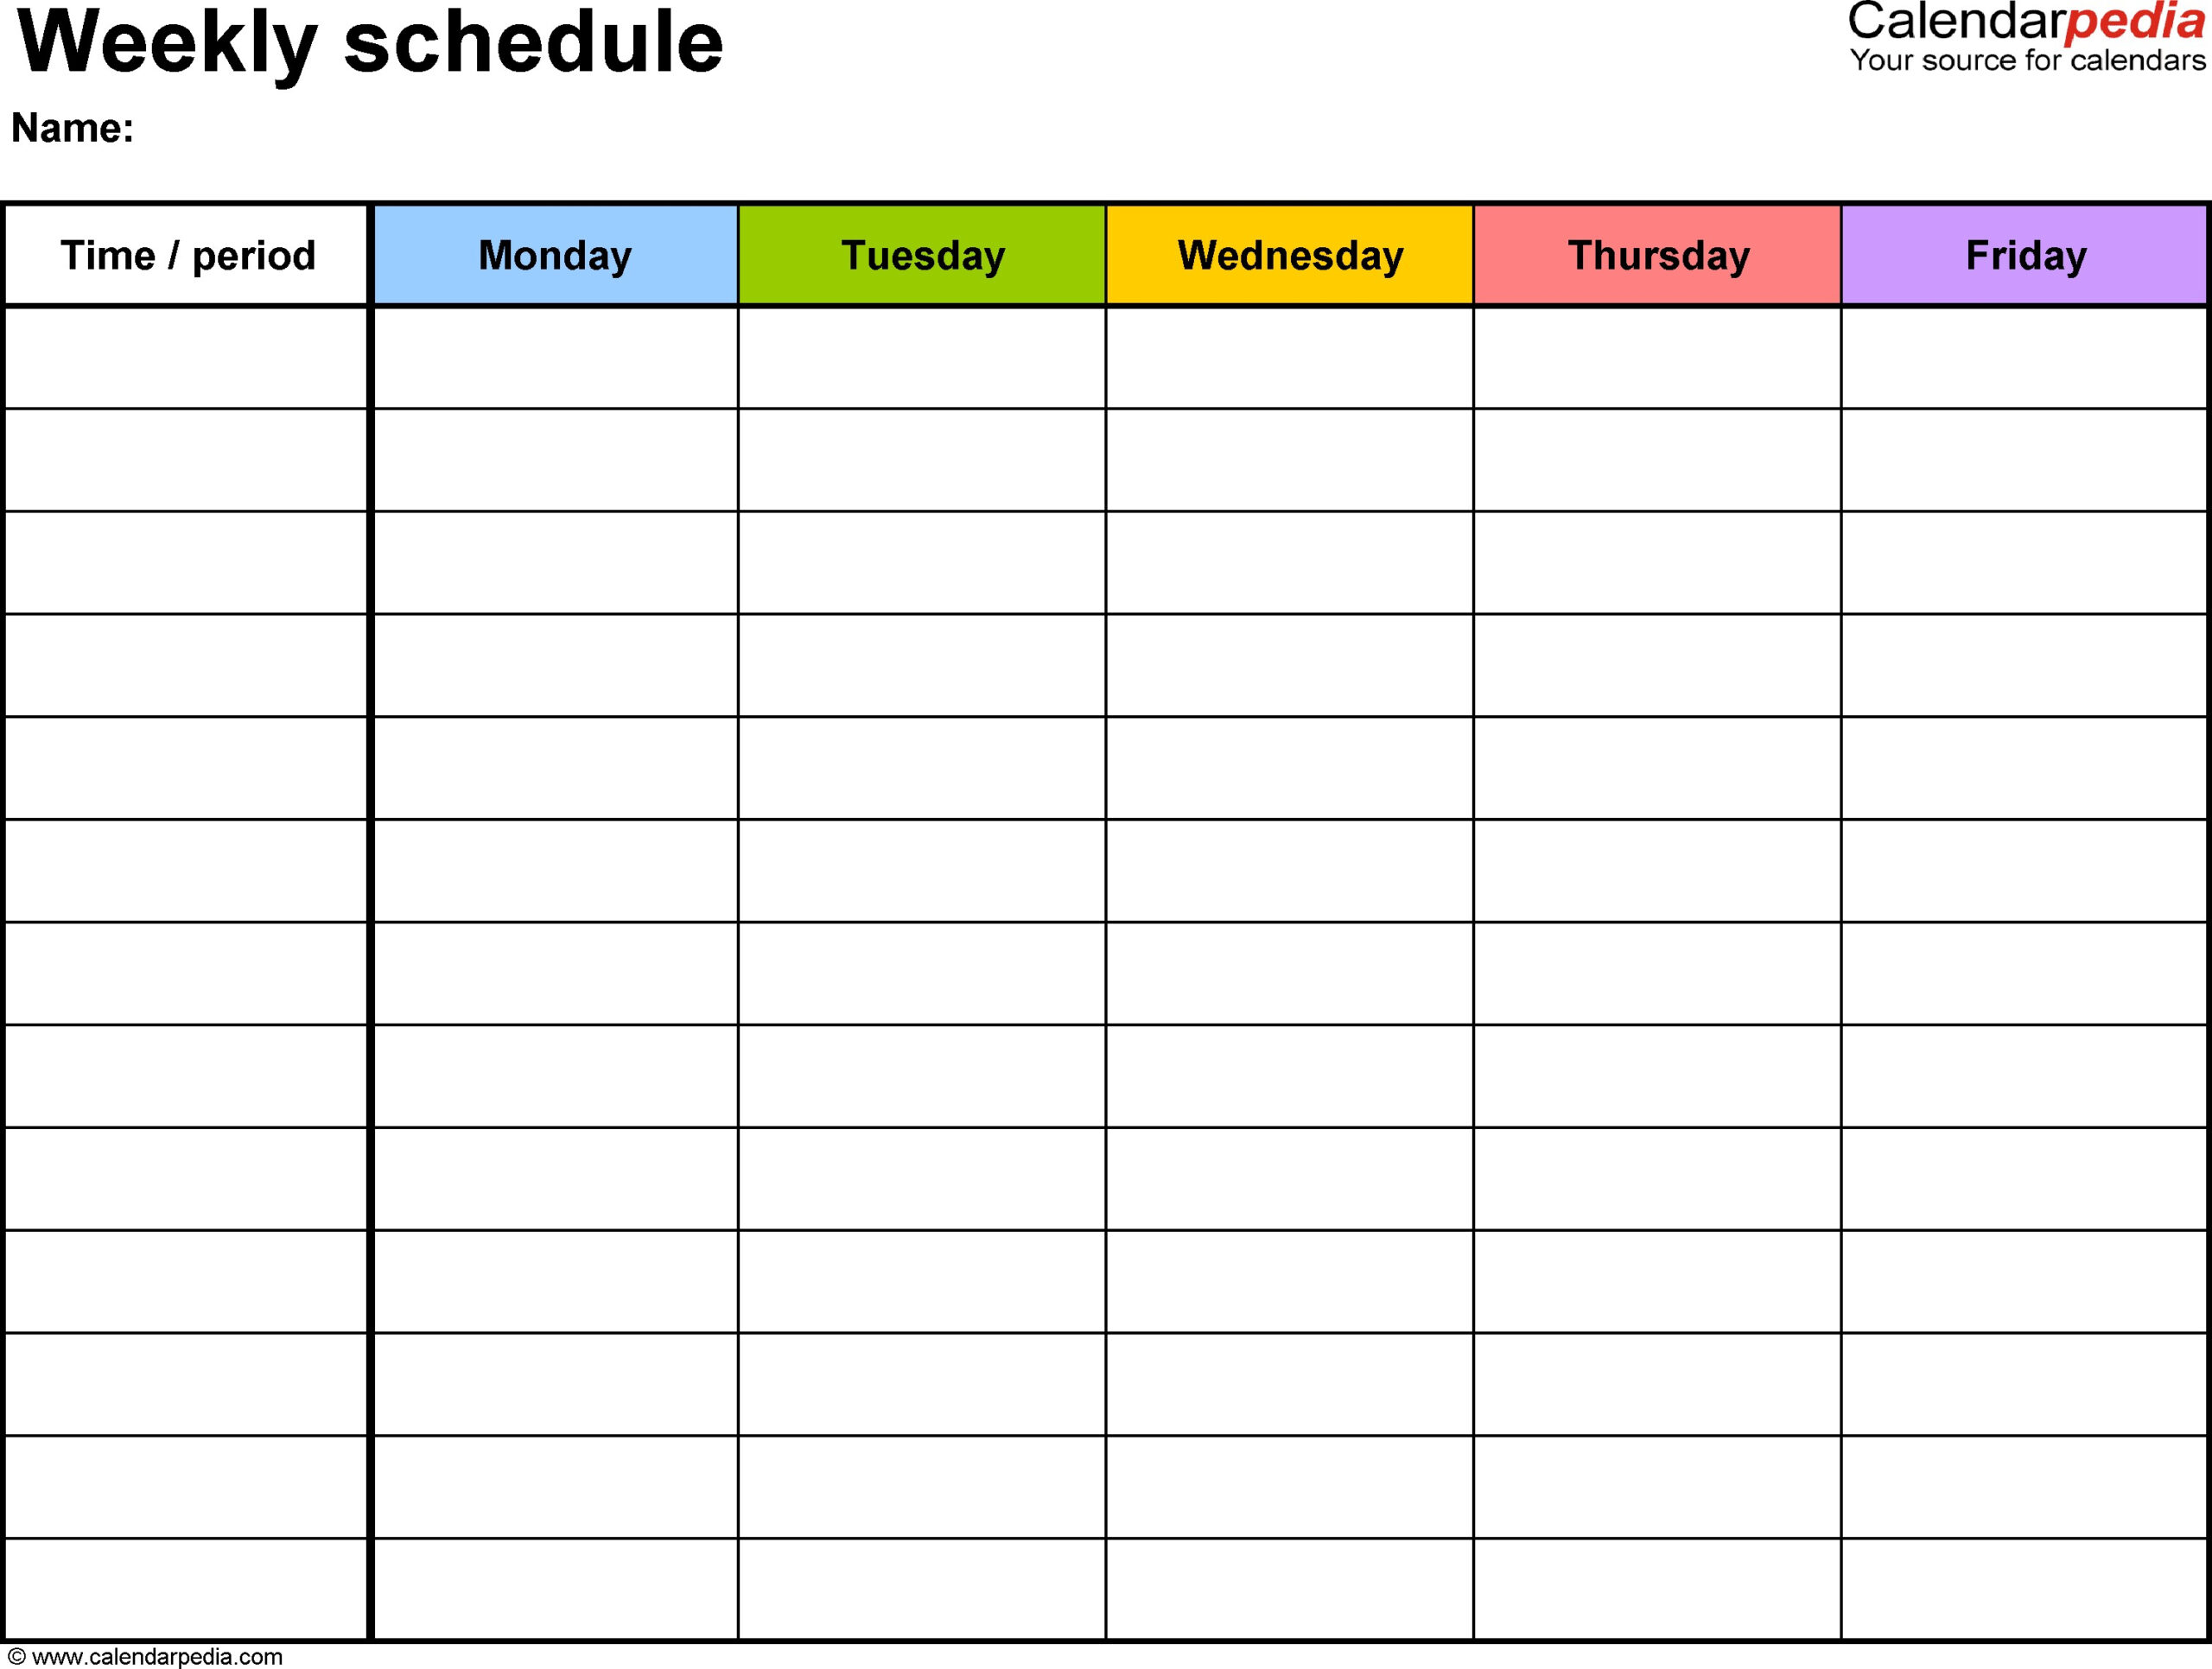 Weekly Calendar With Time Slots - Calendar Printable Week